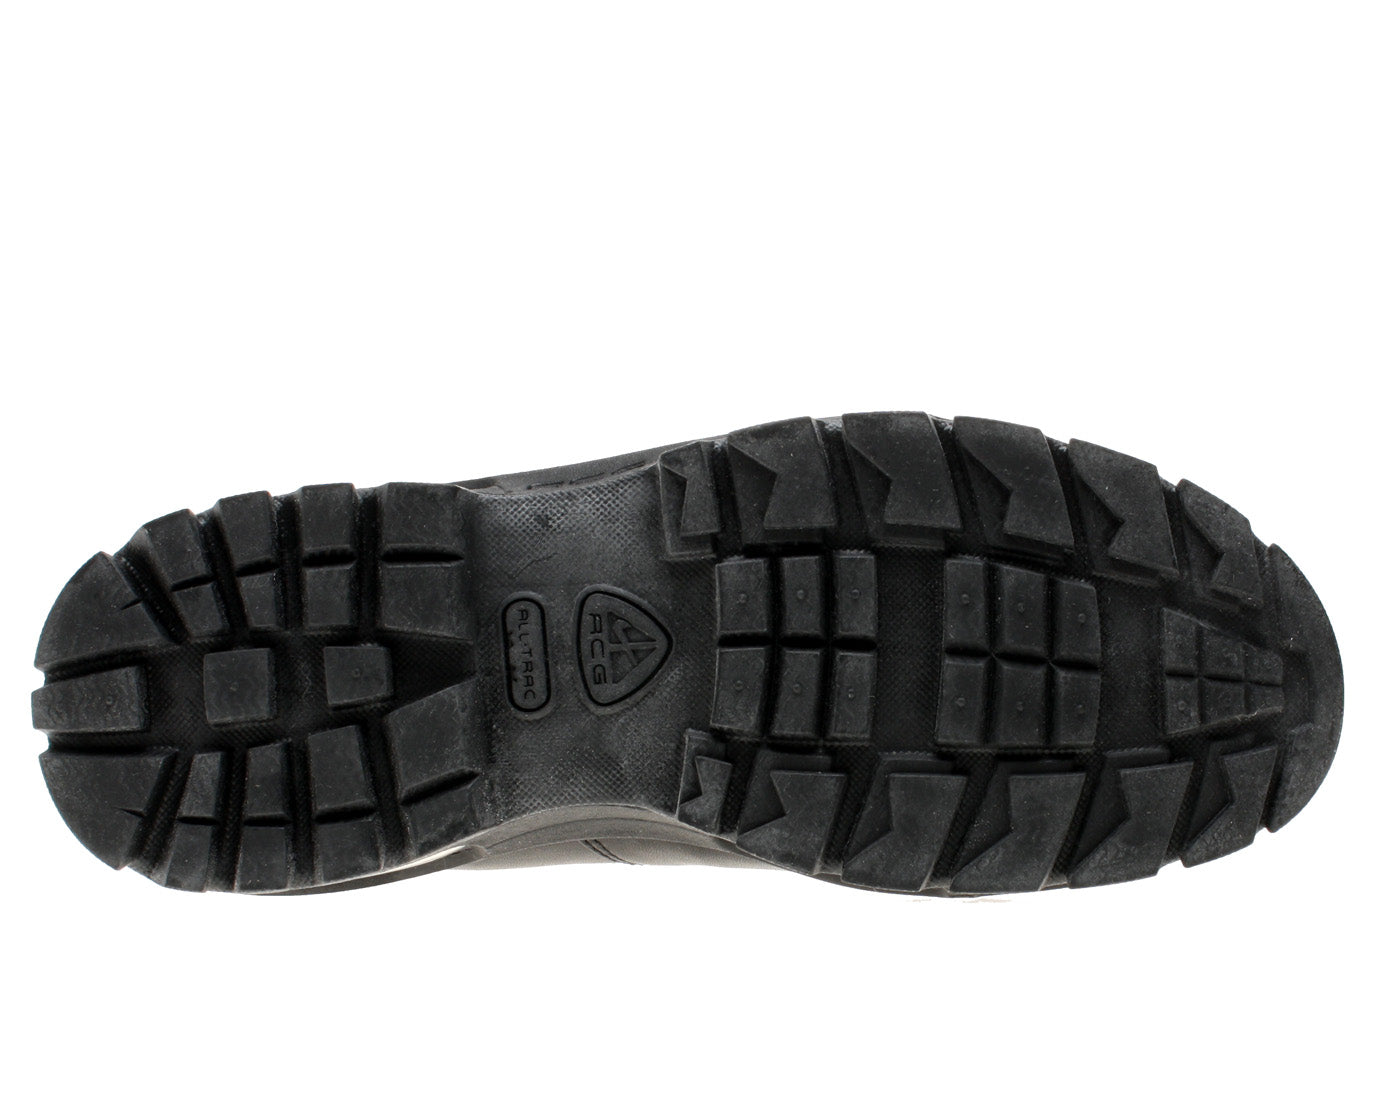 Nike Air Max Goadome ACG Black/Black Men's Boots 865031-009